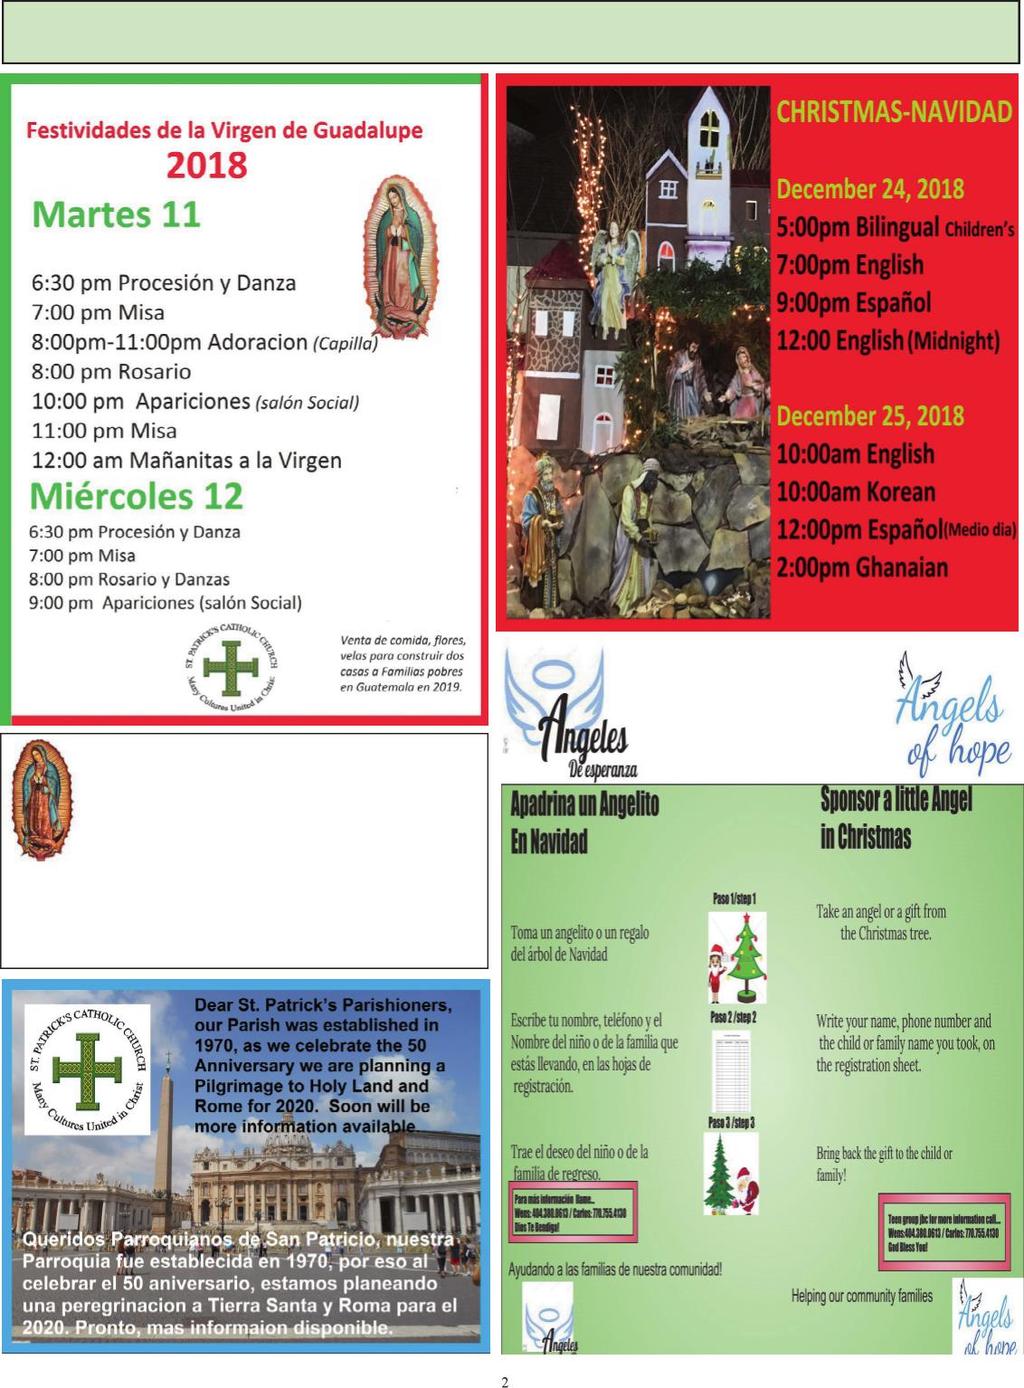 PARISH NEWS / NOTICIAS PARROQUIA Este Martes 11 y Miercoles 12 de Diciembre, para la fiesta de la Virgen de Guadalupe, tendremos venta de Comida para recaudar fondos para la Construcción de una o dos